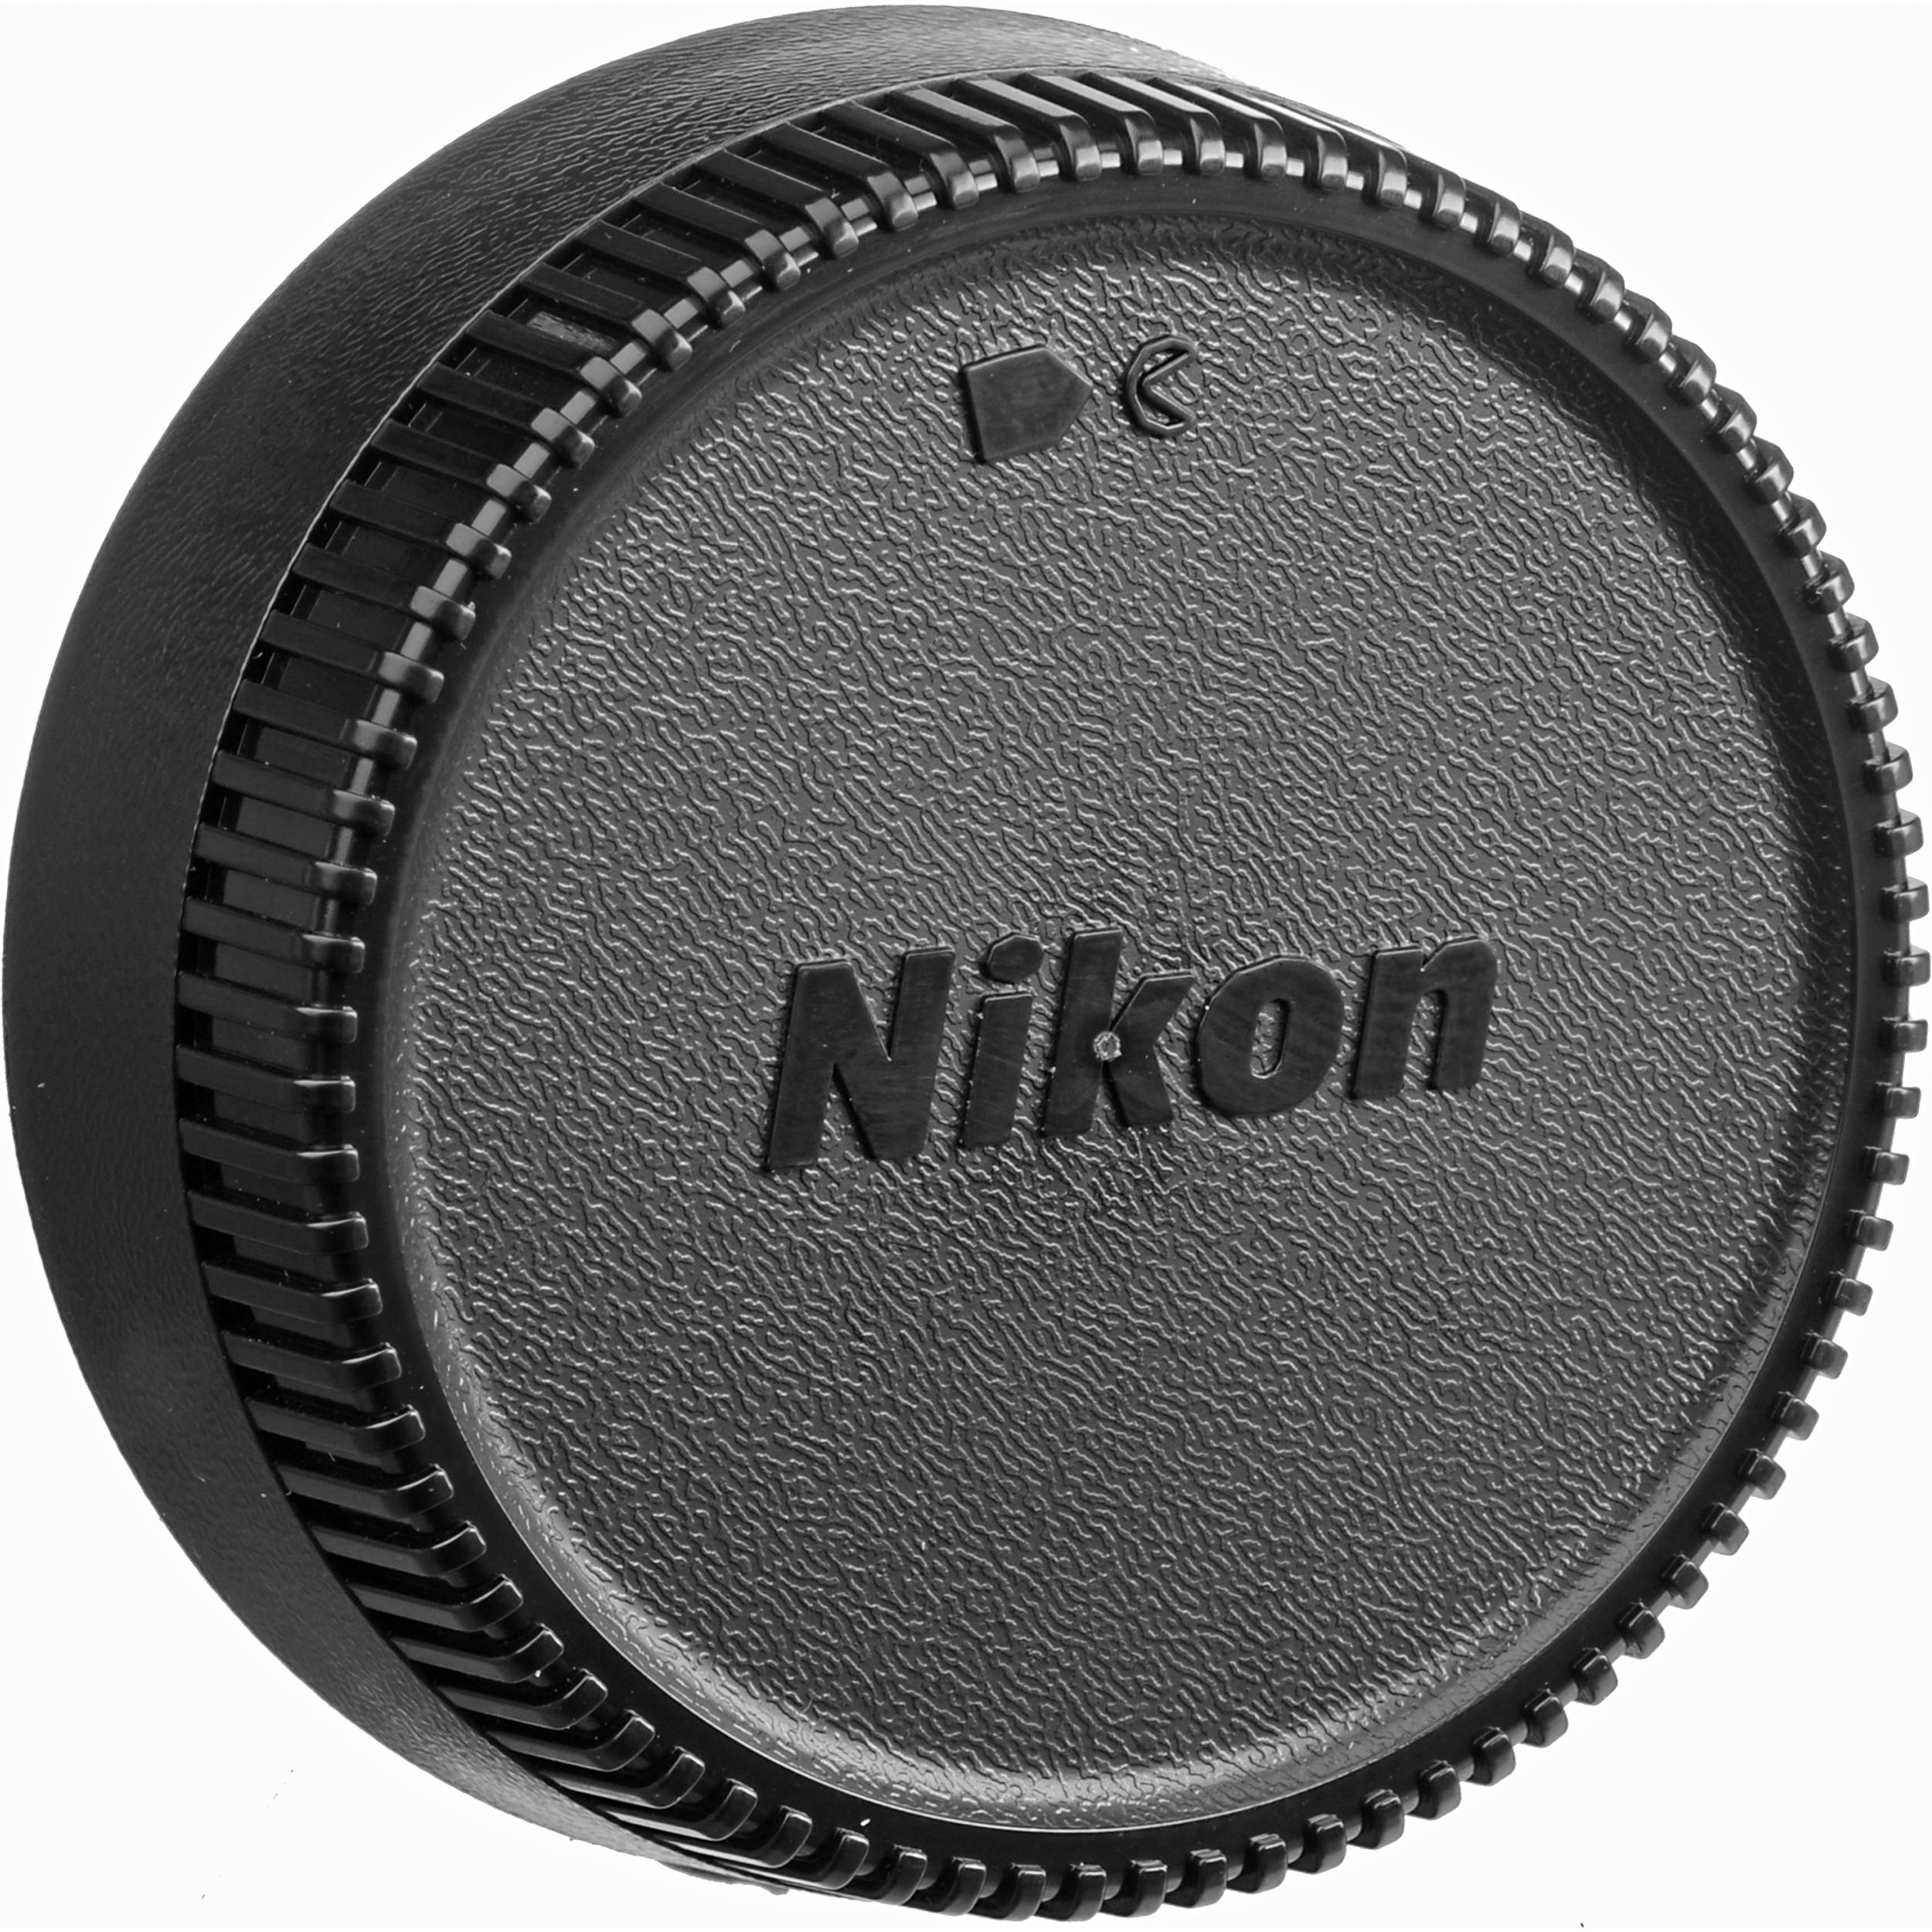 Nikon Af S Nikkor 24 70mm F 2 8g Ed Lens 2164 B H Photo Video